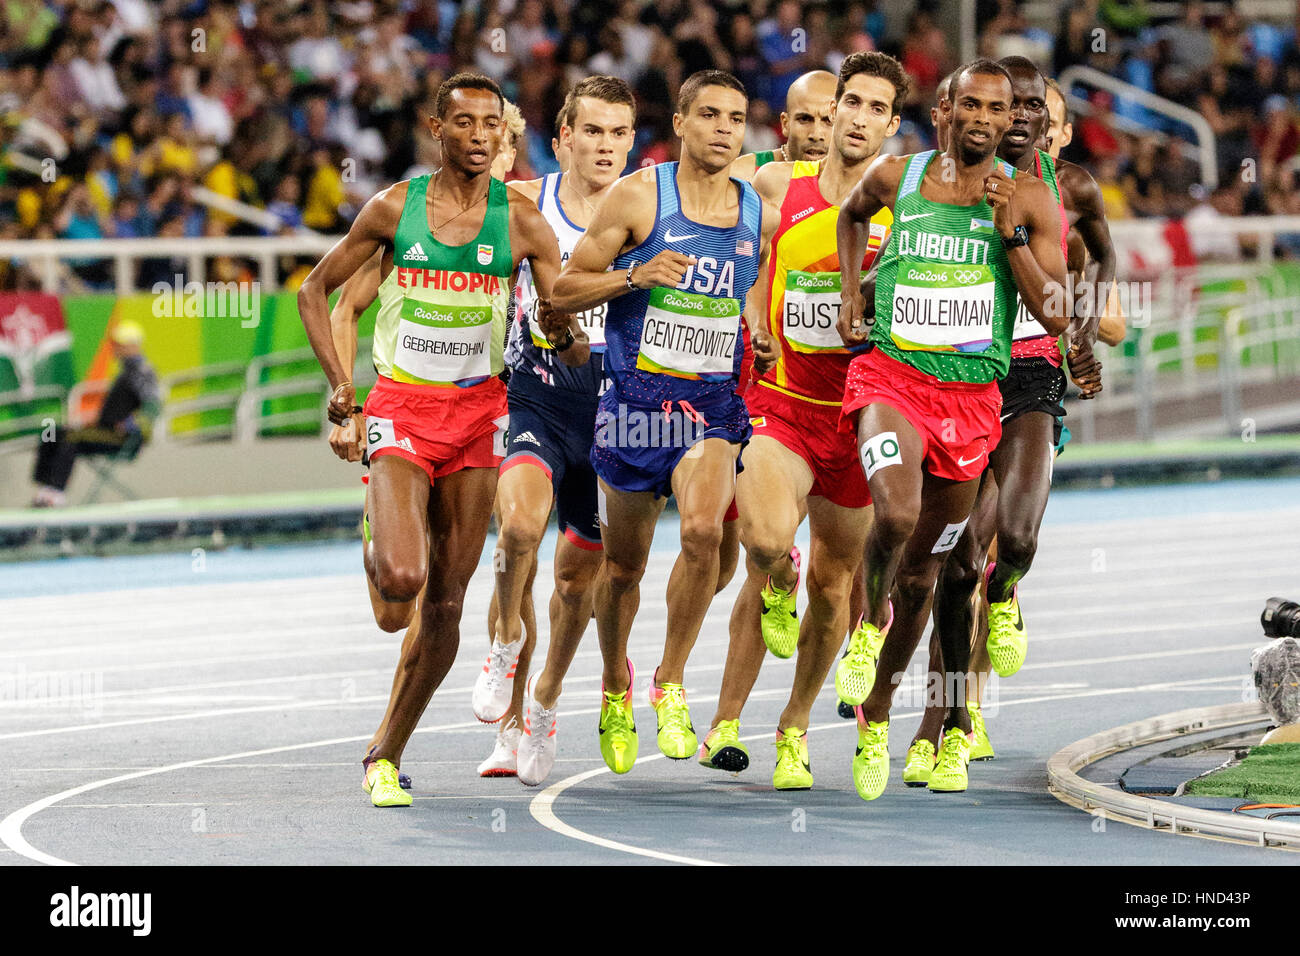 Rio de Janeiro, Brasile. Il 18 agosto 2016. Atletica, Matthew Centrowitz (USA) concorrenti negli uomini del 1500m semi-finale al 2016 Olimpiadi Estive Foto Stock